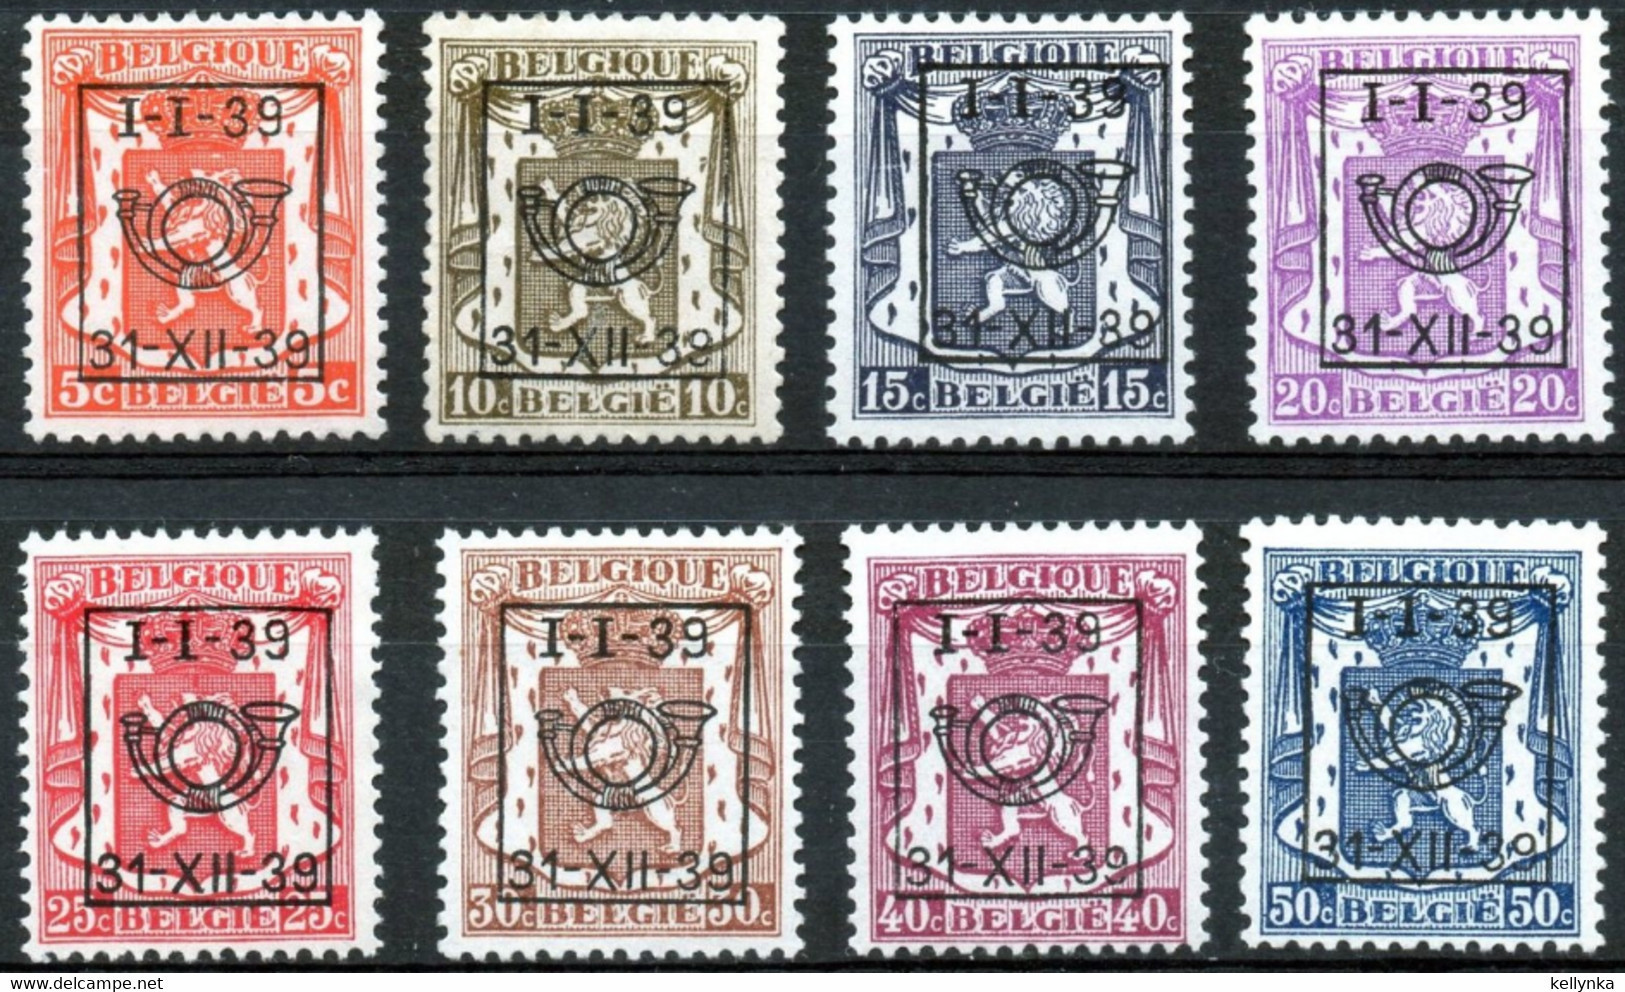 Belgique - Belgie - PRE420/427 - Préoblitérés - 1939 - MNH & MH - Typos 1936-51 (Petit Sceau)